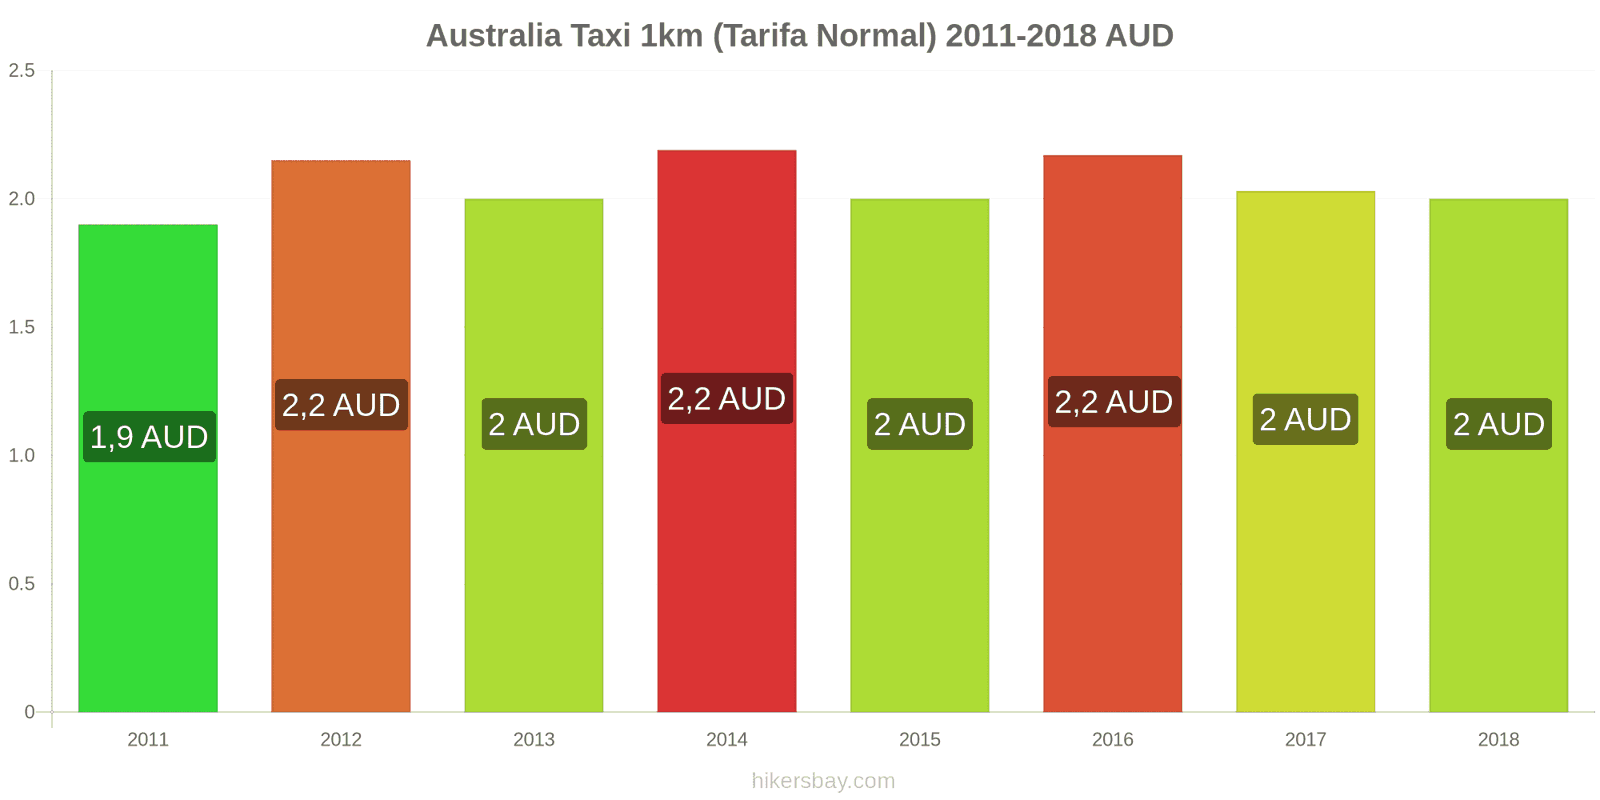 Australia cambios de precios Taxi 1km (tarifa normal) hikersbay.com